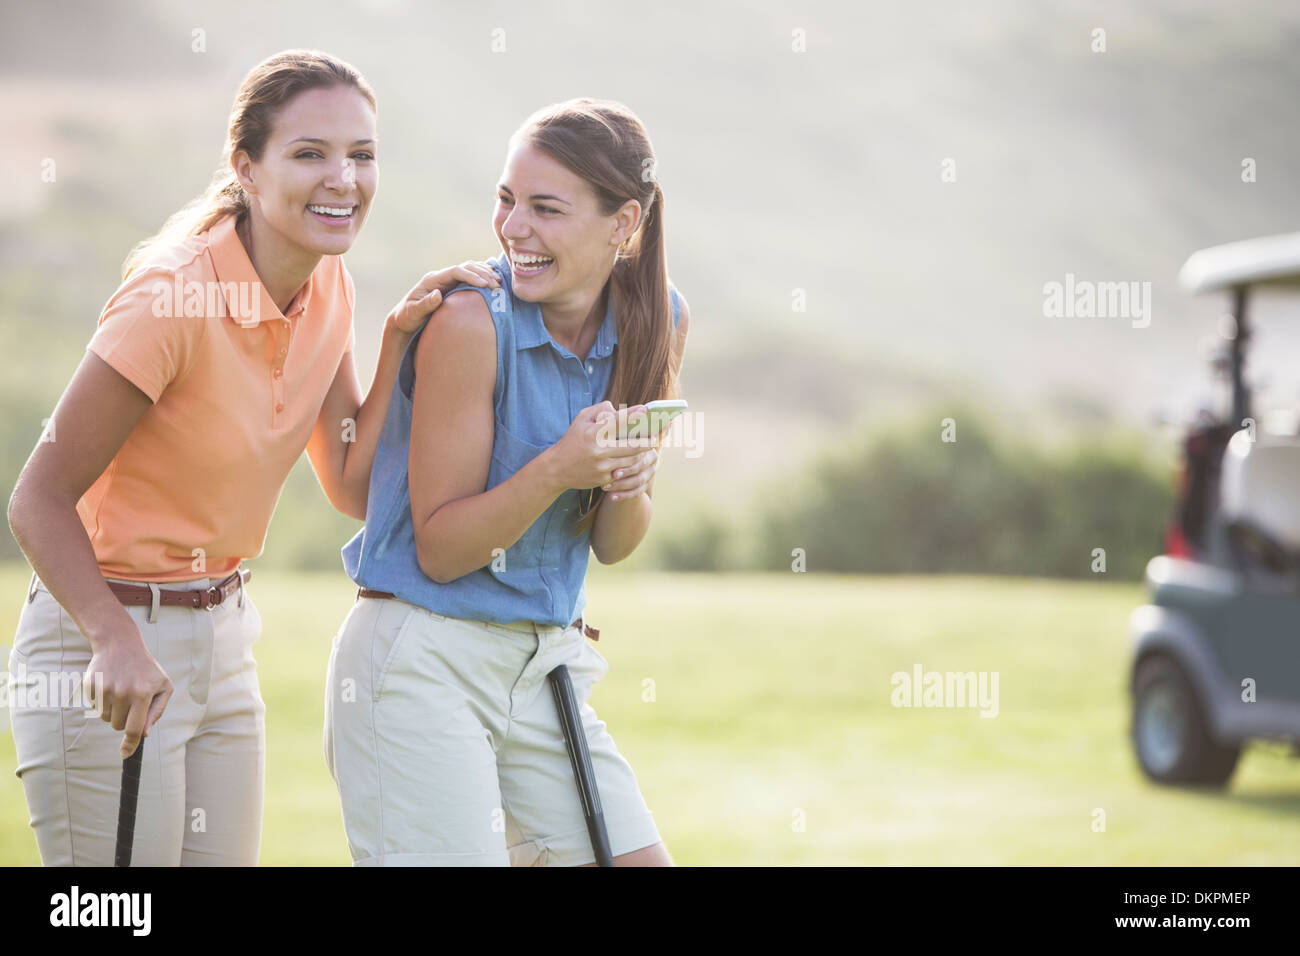 Frauen lachen auf Golfplatz Stockfoto